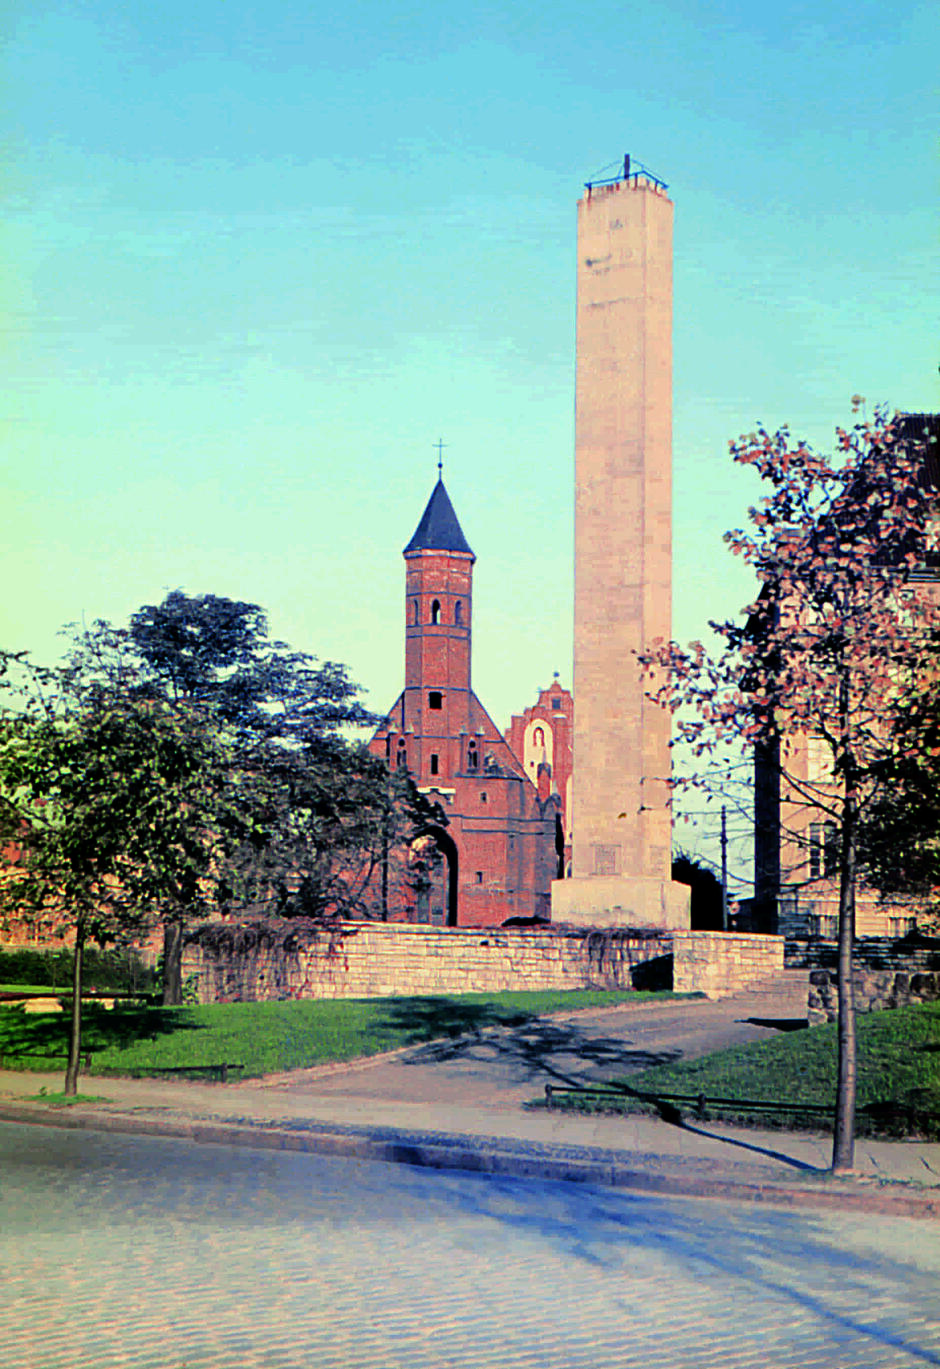 Pionowy, wysoki obelisk na tle kościoła gotyckiego 